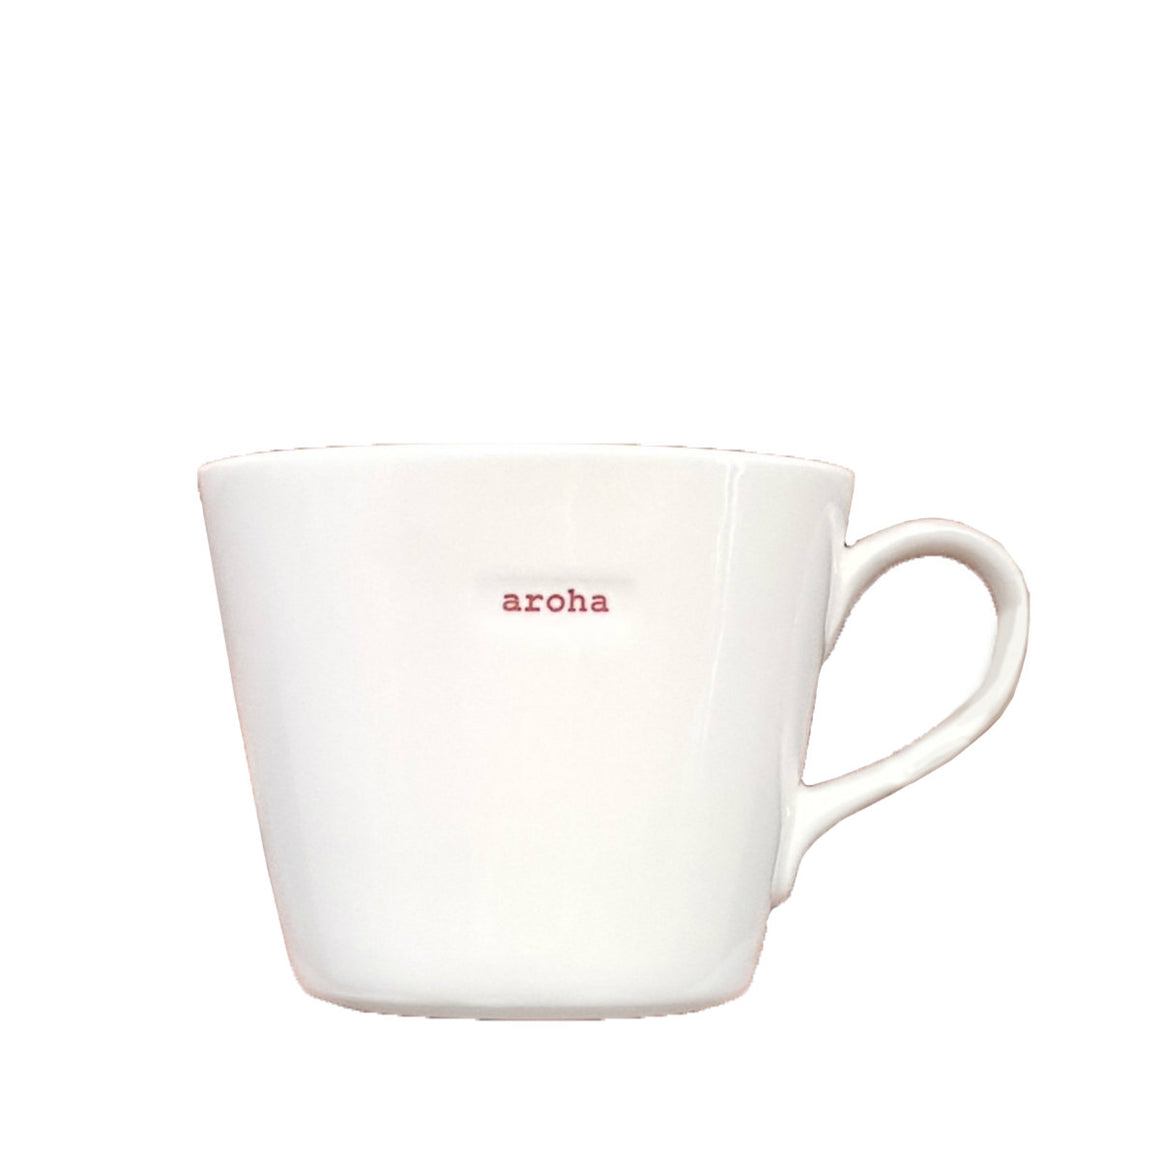 Aroha Bucket Mug